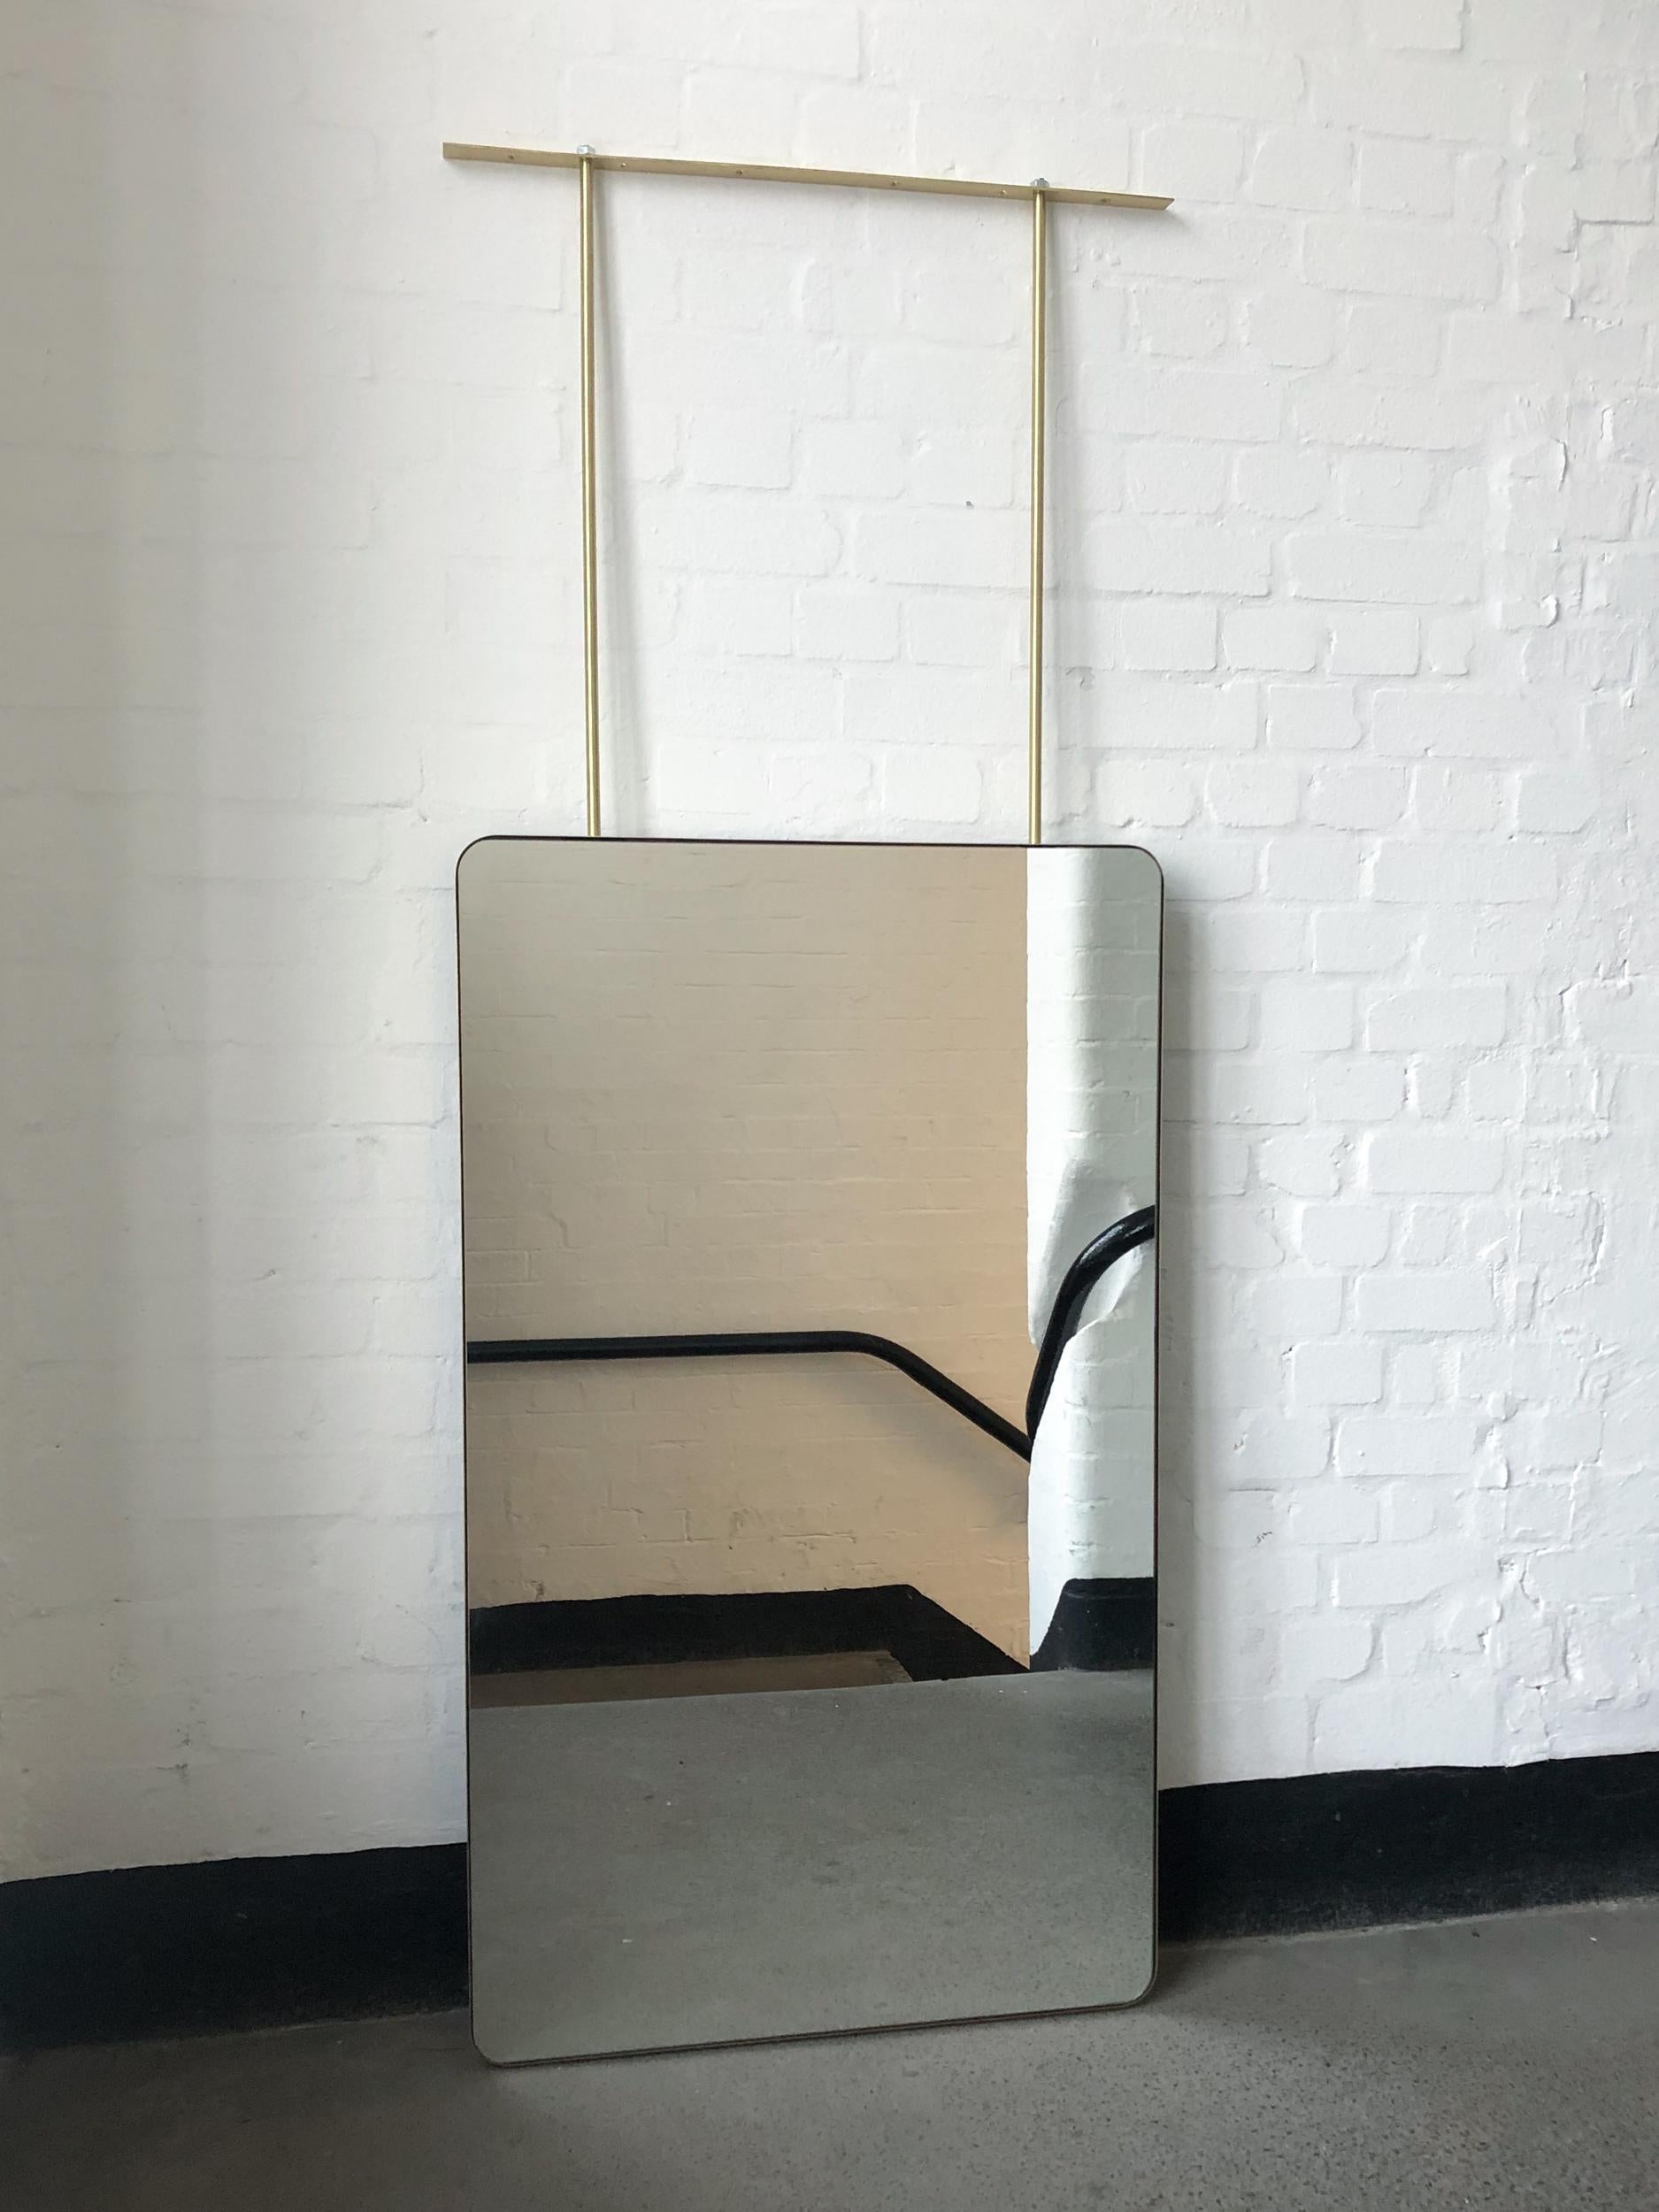 Grand miroir rectangulaire impressionnant suspendu au plafond avec un beau cadre en laiton massif brossé.

Mesures : 711 mm (28